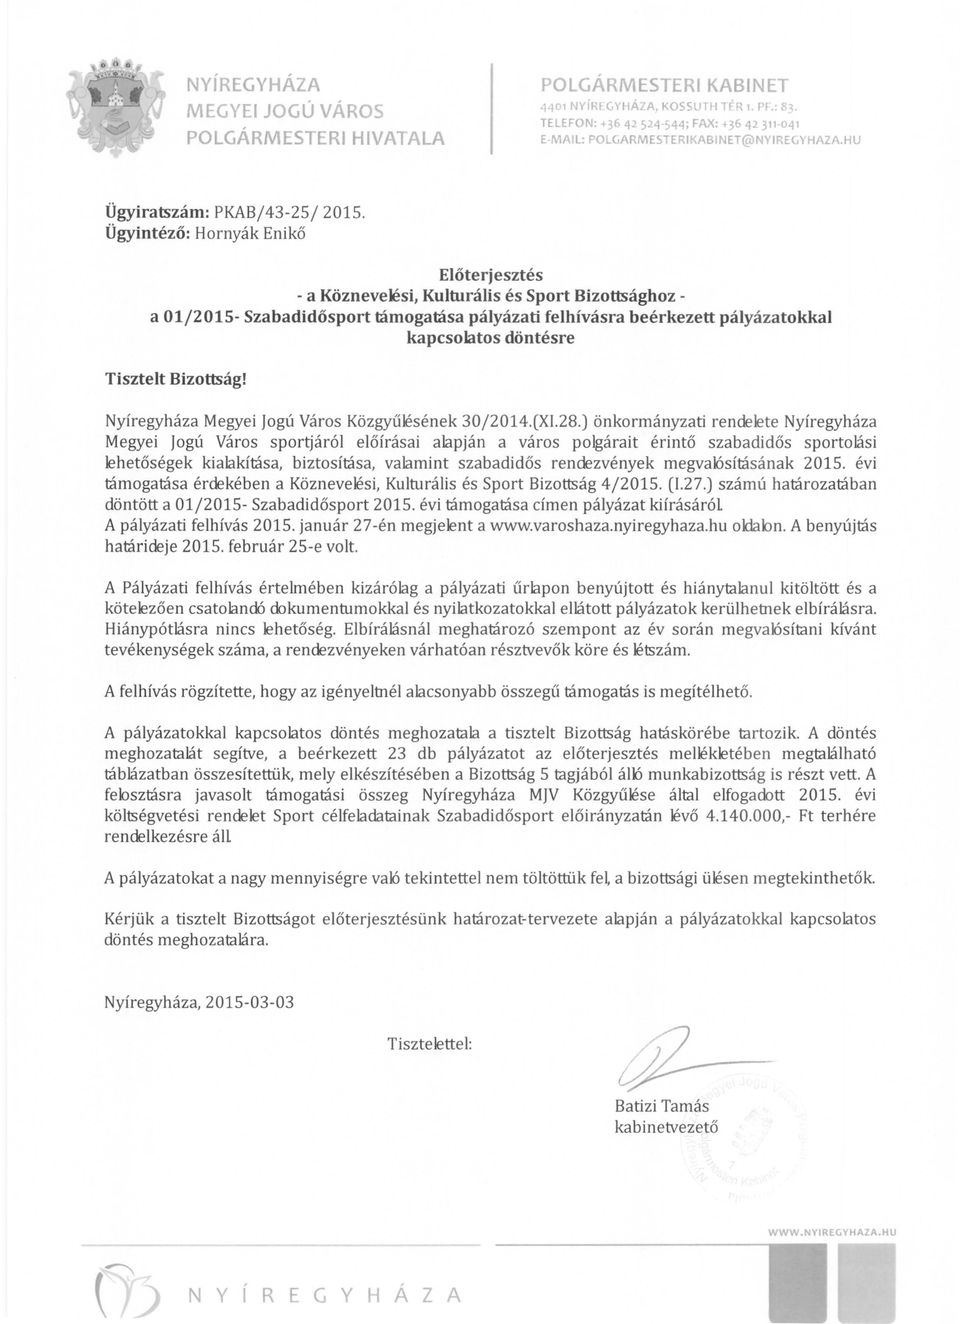 Ügyintéző: Hornyák Enikő Előterjesztés - a Köznevelési, Kulturális és Sport Bizottsághoz a 01/2015- Szabadidősport támogatása pályázati felhívásra beérkezett pályázatokkal kapcsolatos döntésre